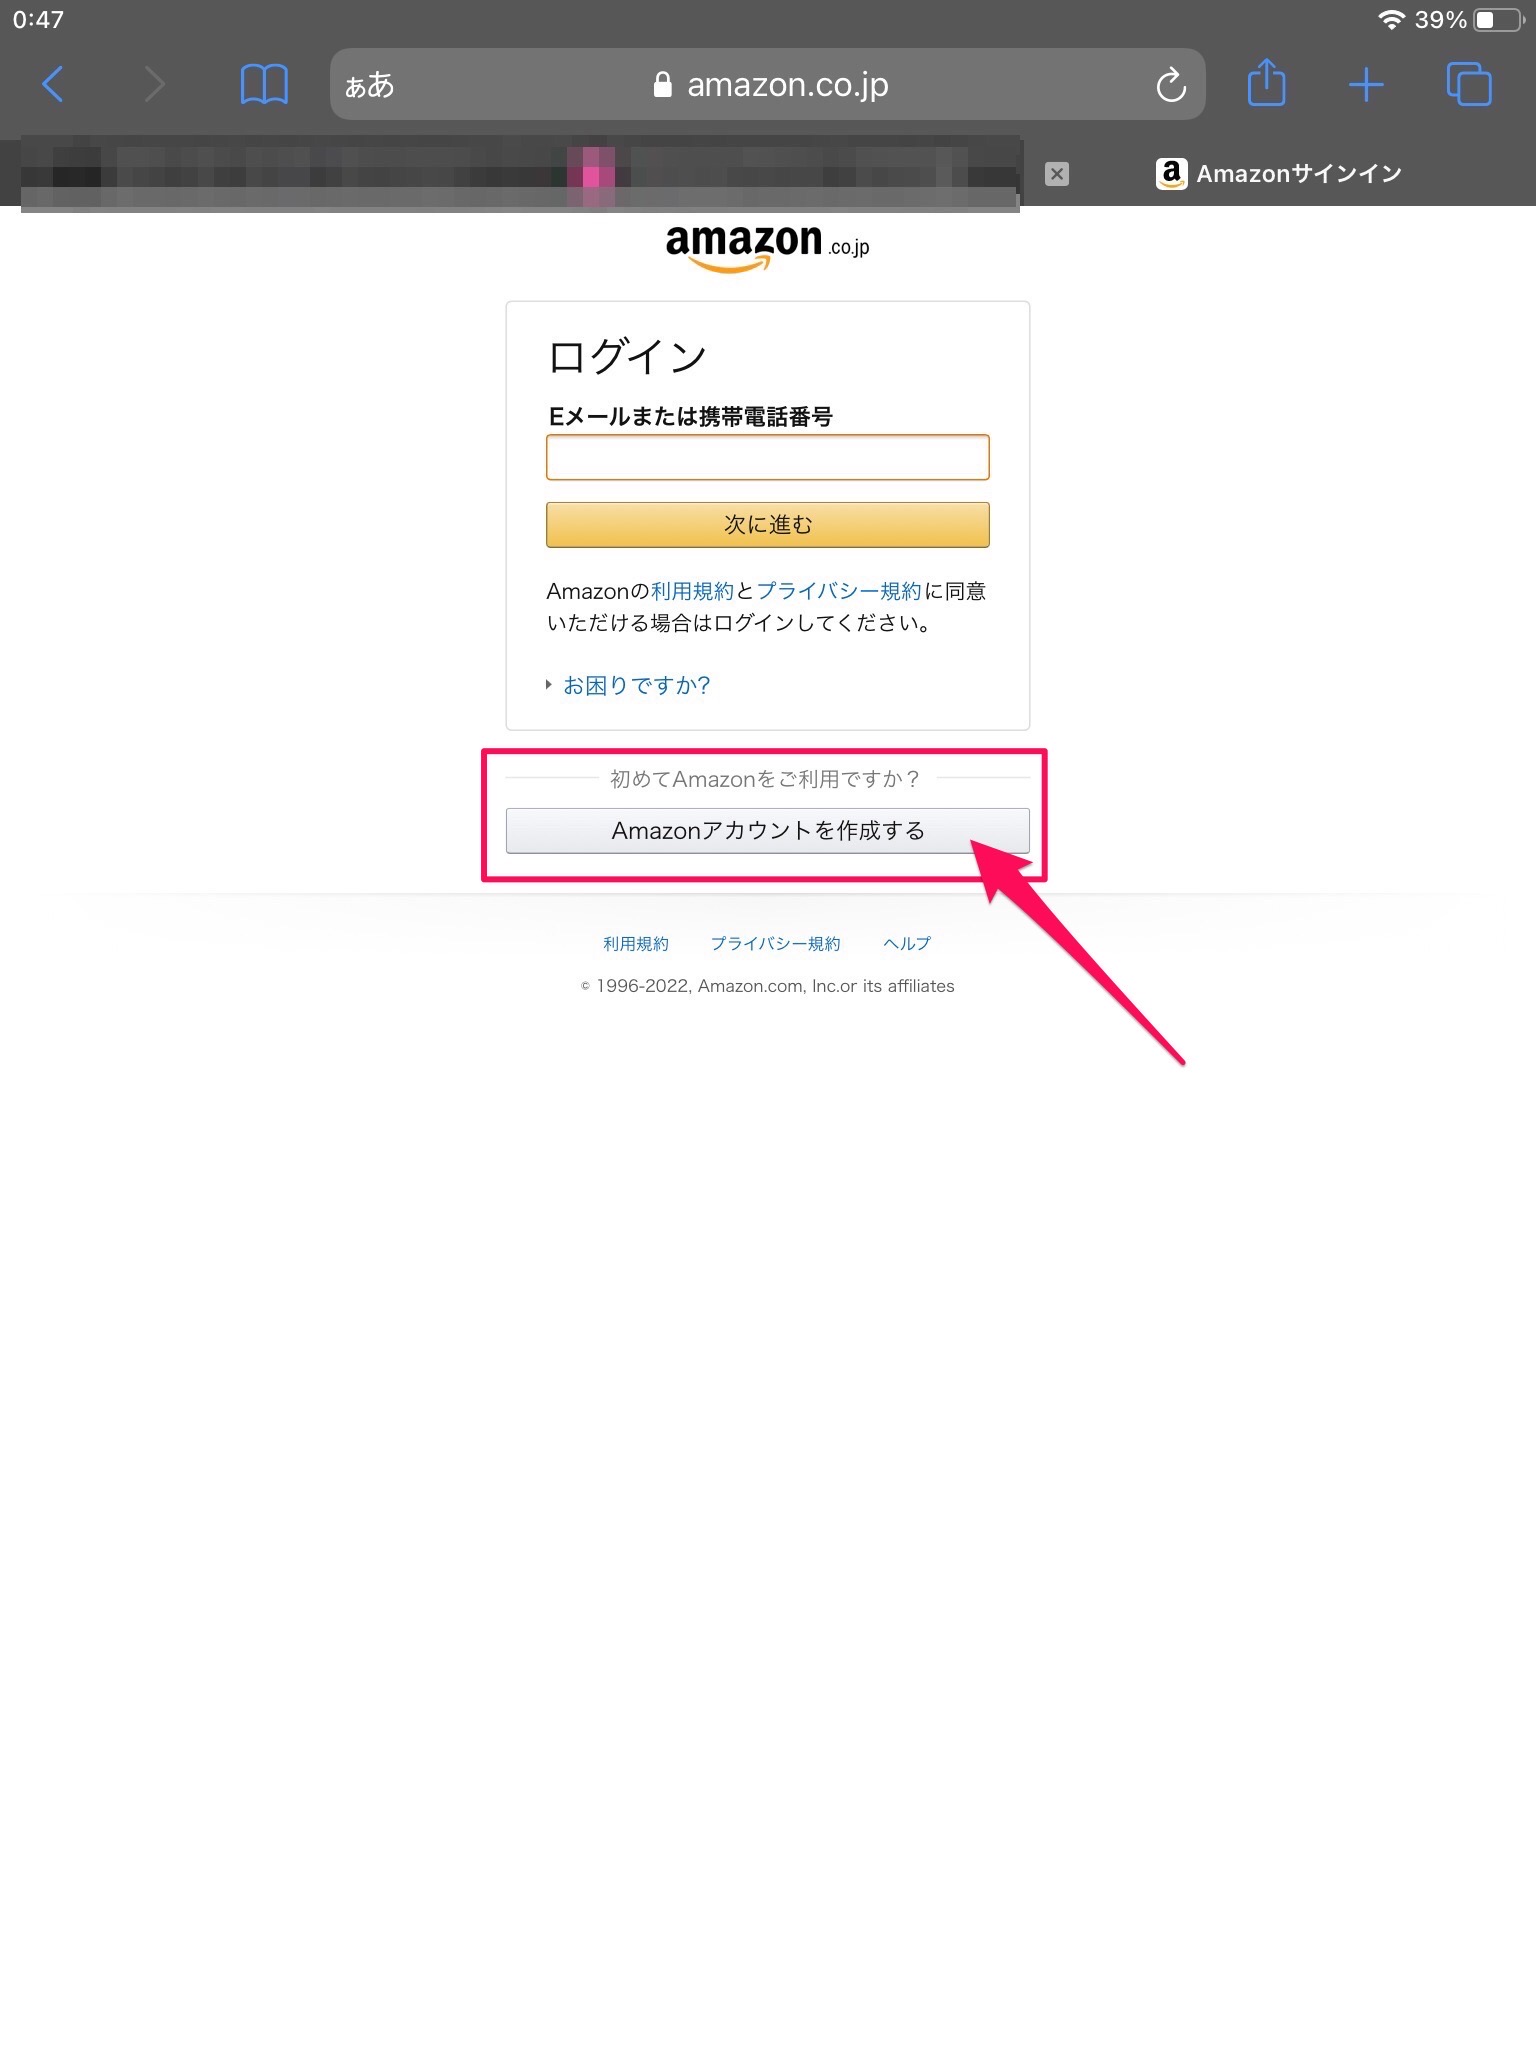 Amazon.co.jp ログイン画面